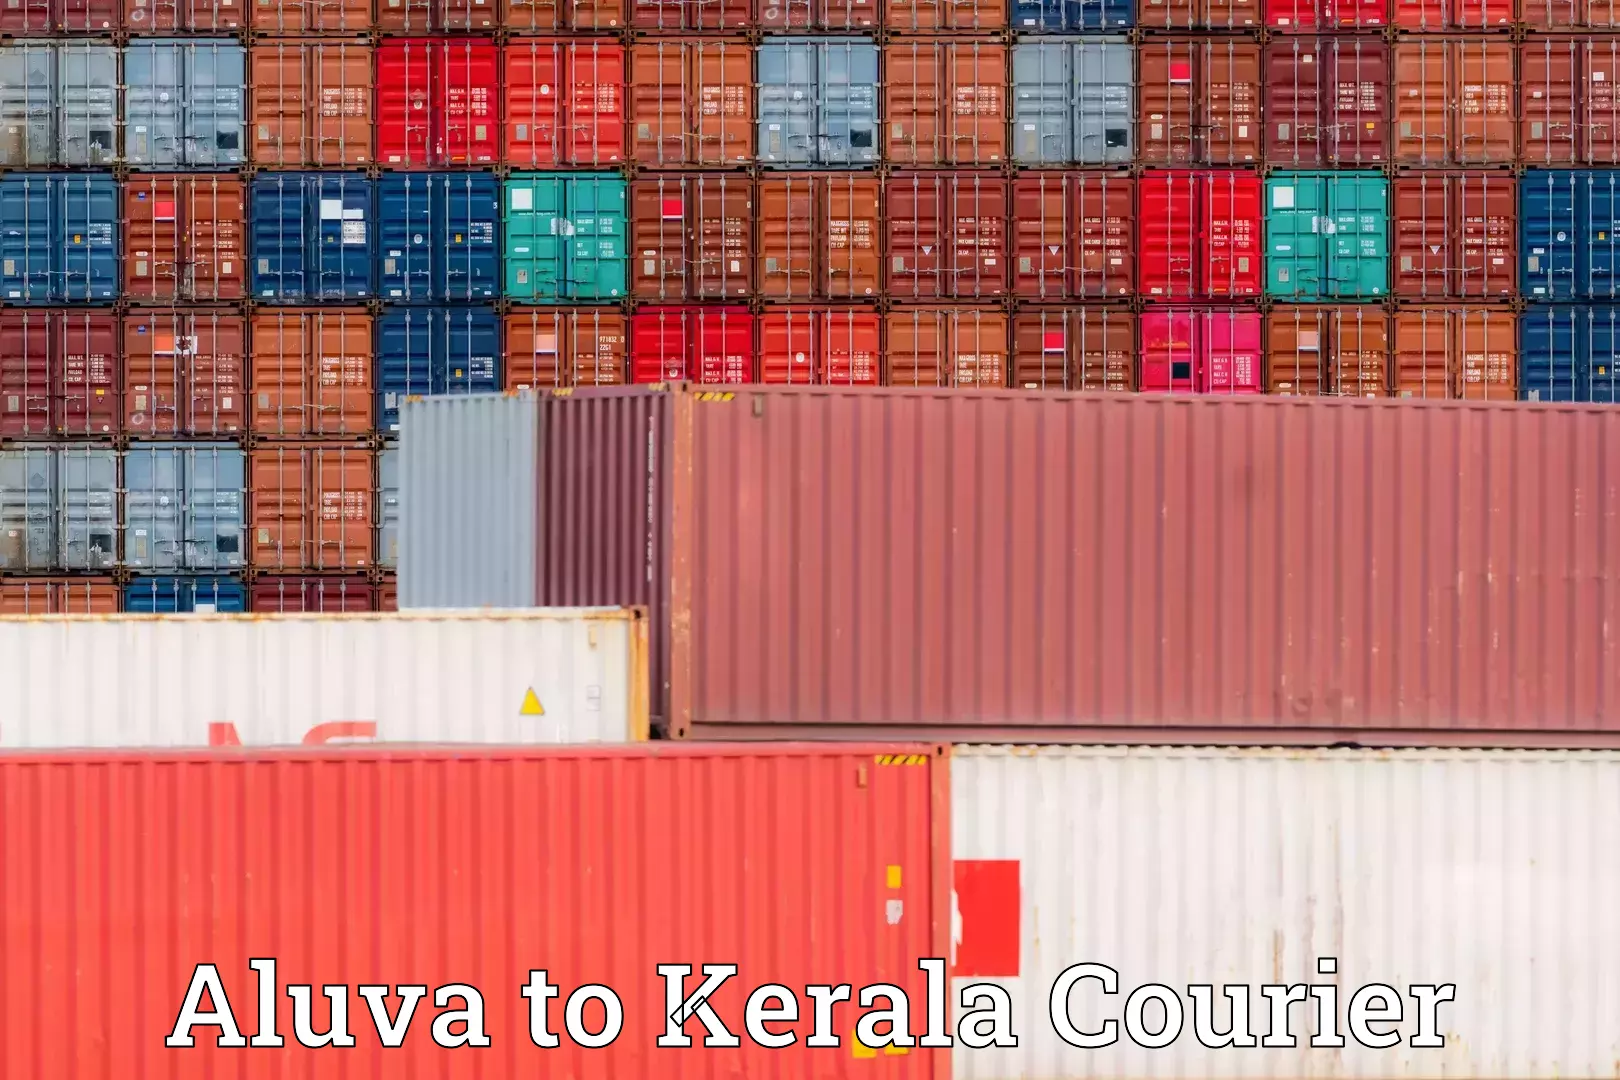 Full-service movers Aluva to Kerala